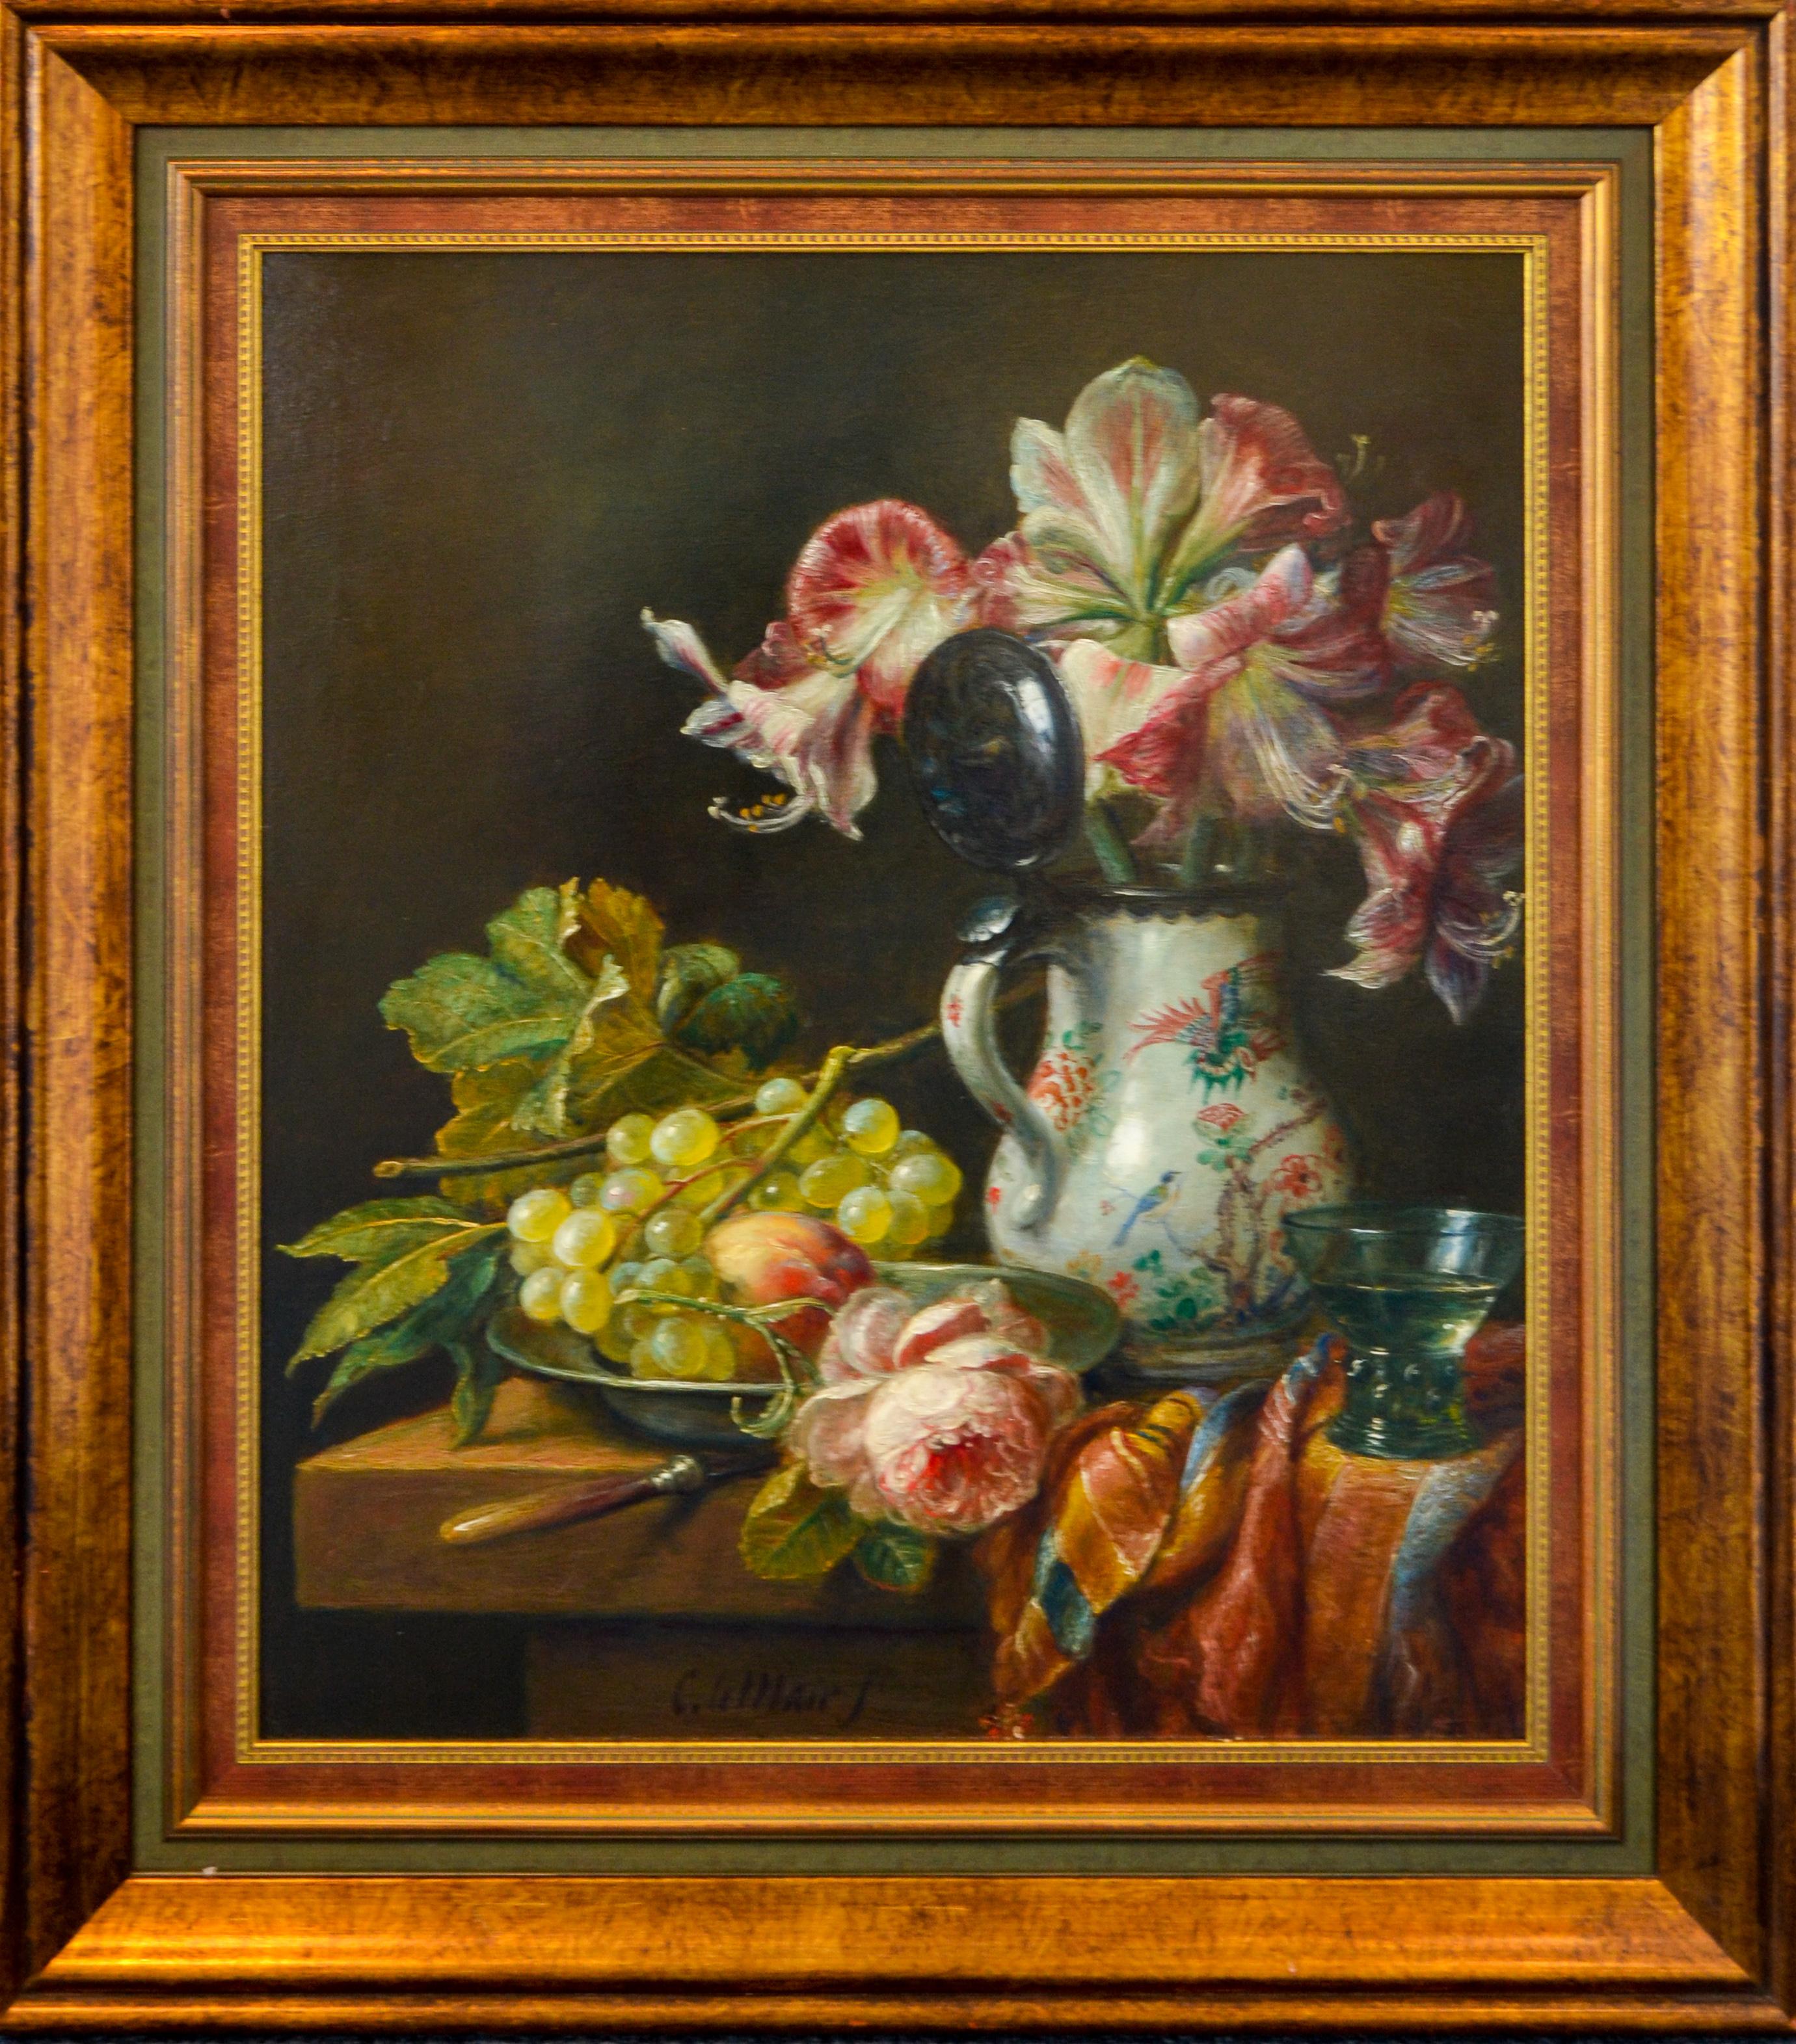 Chinesischer Krug, Trauben und Blumen – holländisches Stillleben im klassischen Stil – Painting von Cornelis Le Mair